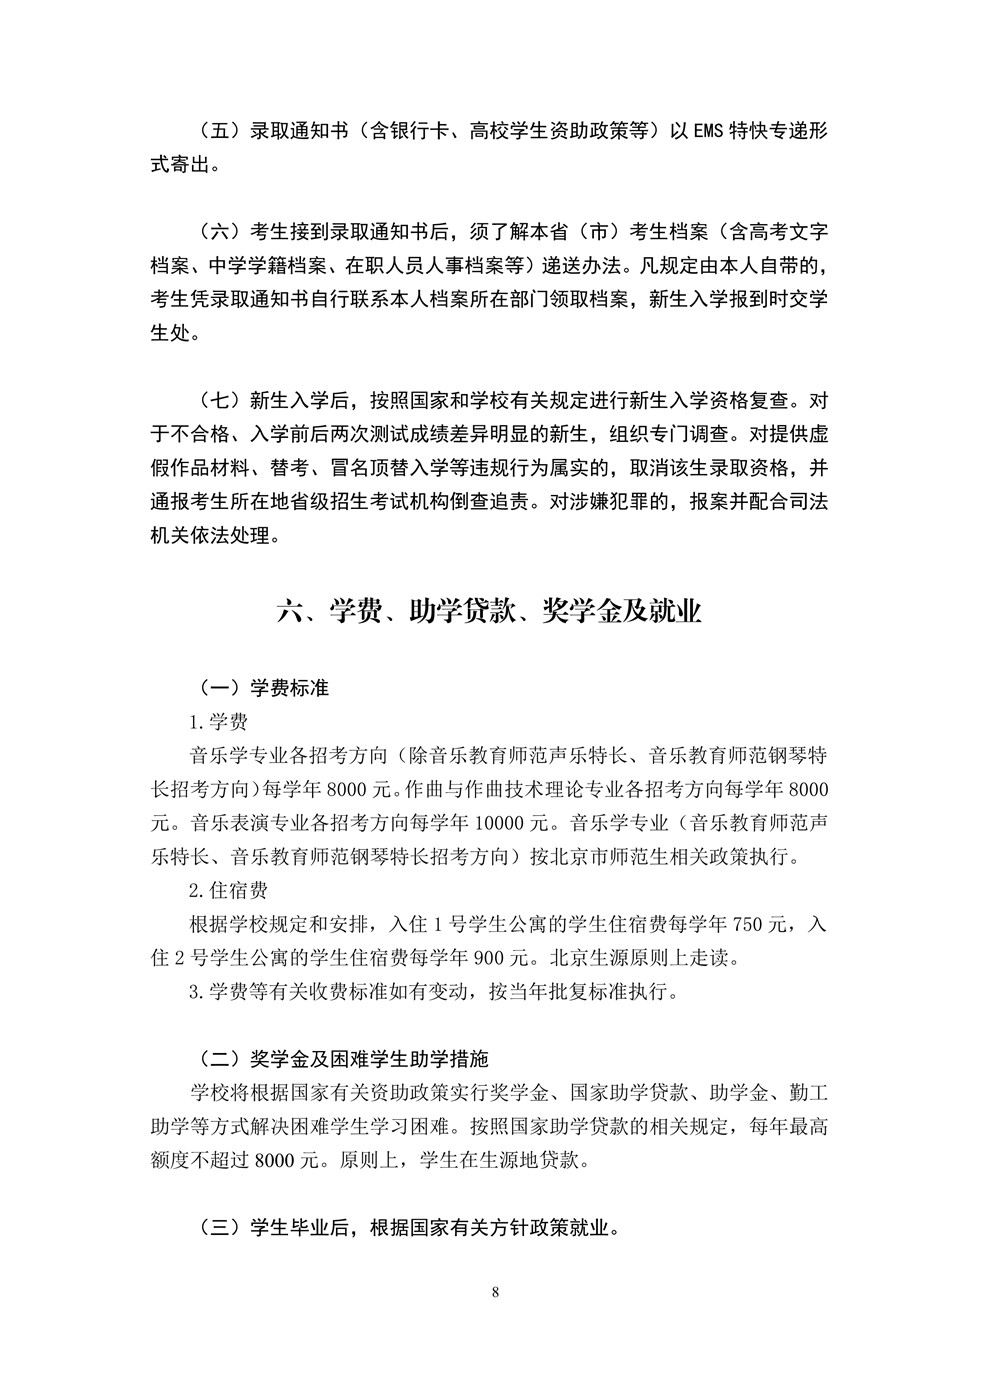 中国音乐学院2020年本科校考招生简章